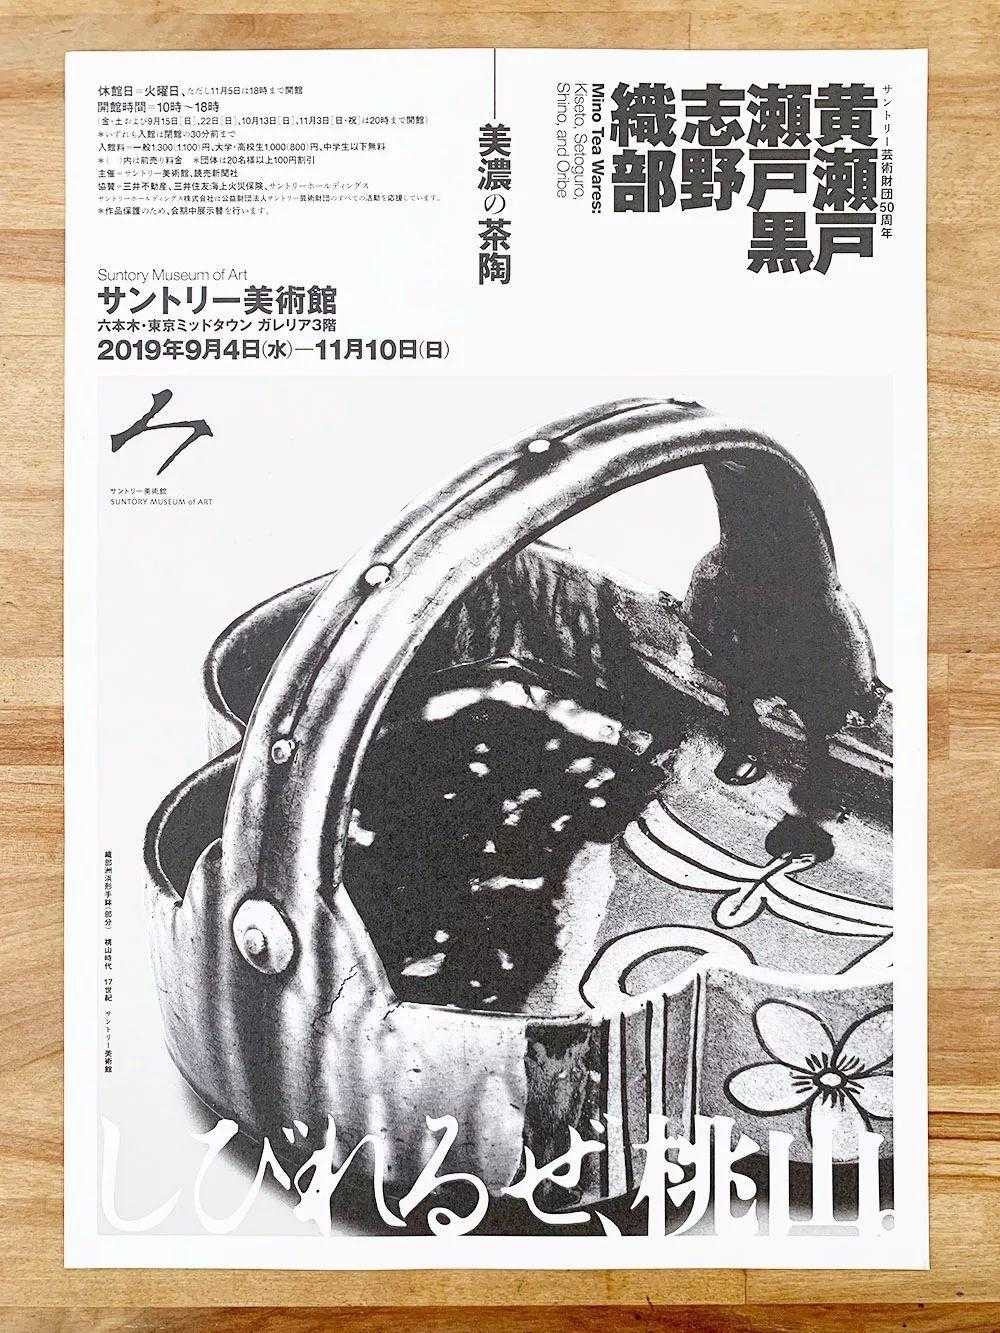 分享一组日本的海报设计 字体排版非常不错